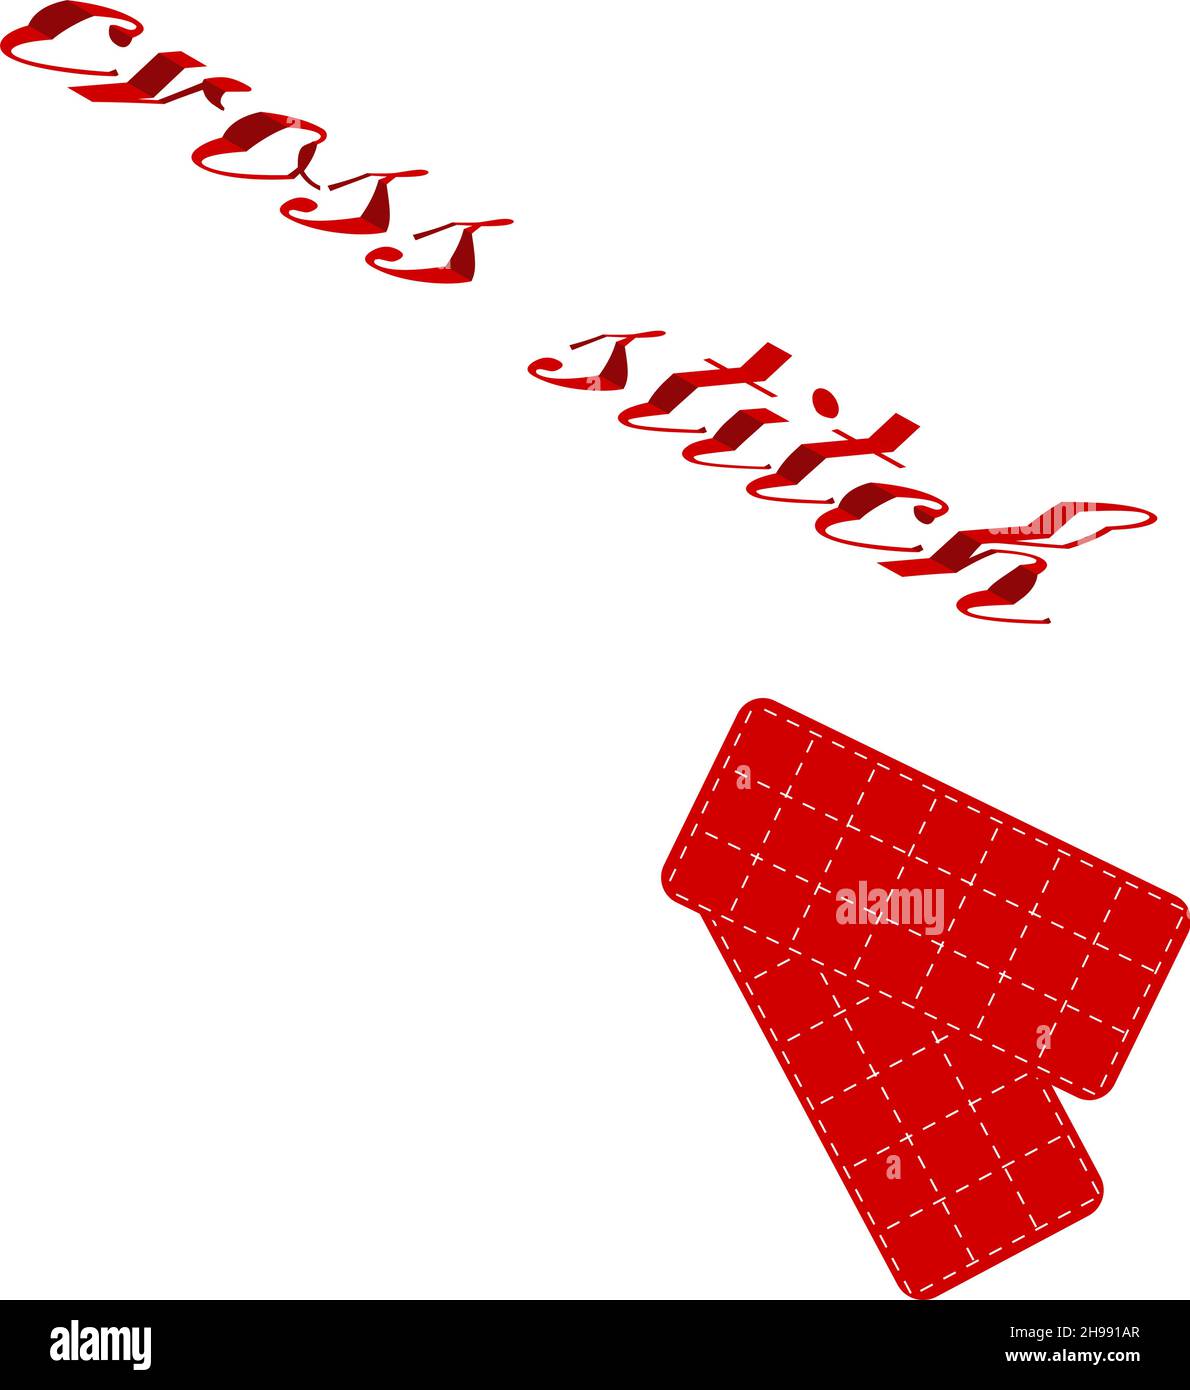 Croiser le mot de police de mosaïque 3d avec une bannière de balise carrée  rouge vide pour écrire le message.Expression de texte de point de croix  dans le style isométrique.Vecteur.Conceptuel Image Vectorielle